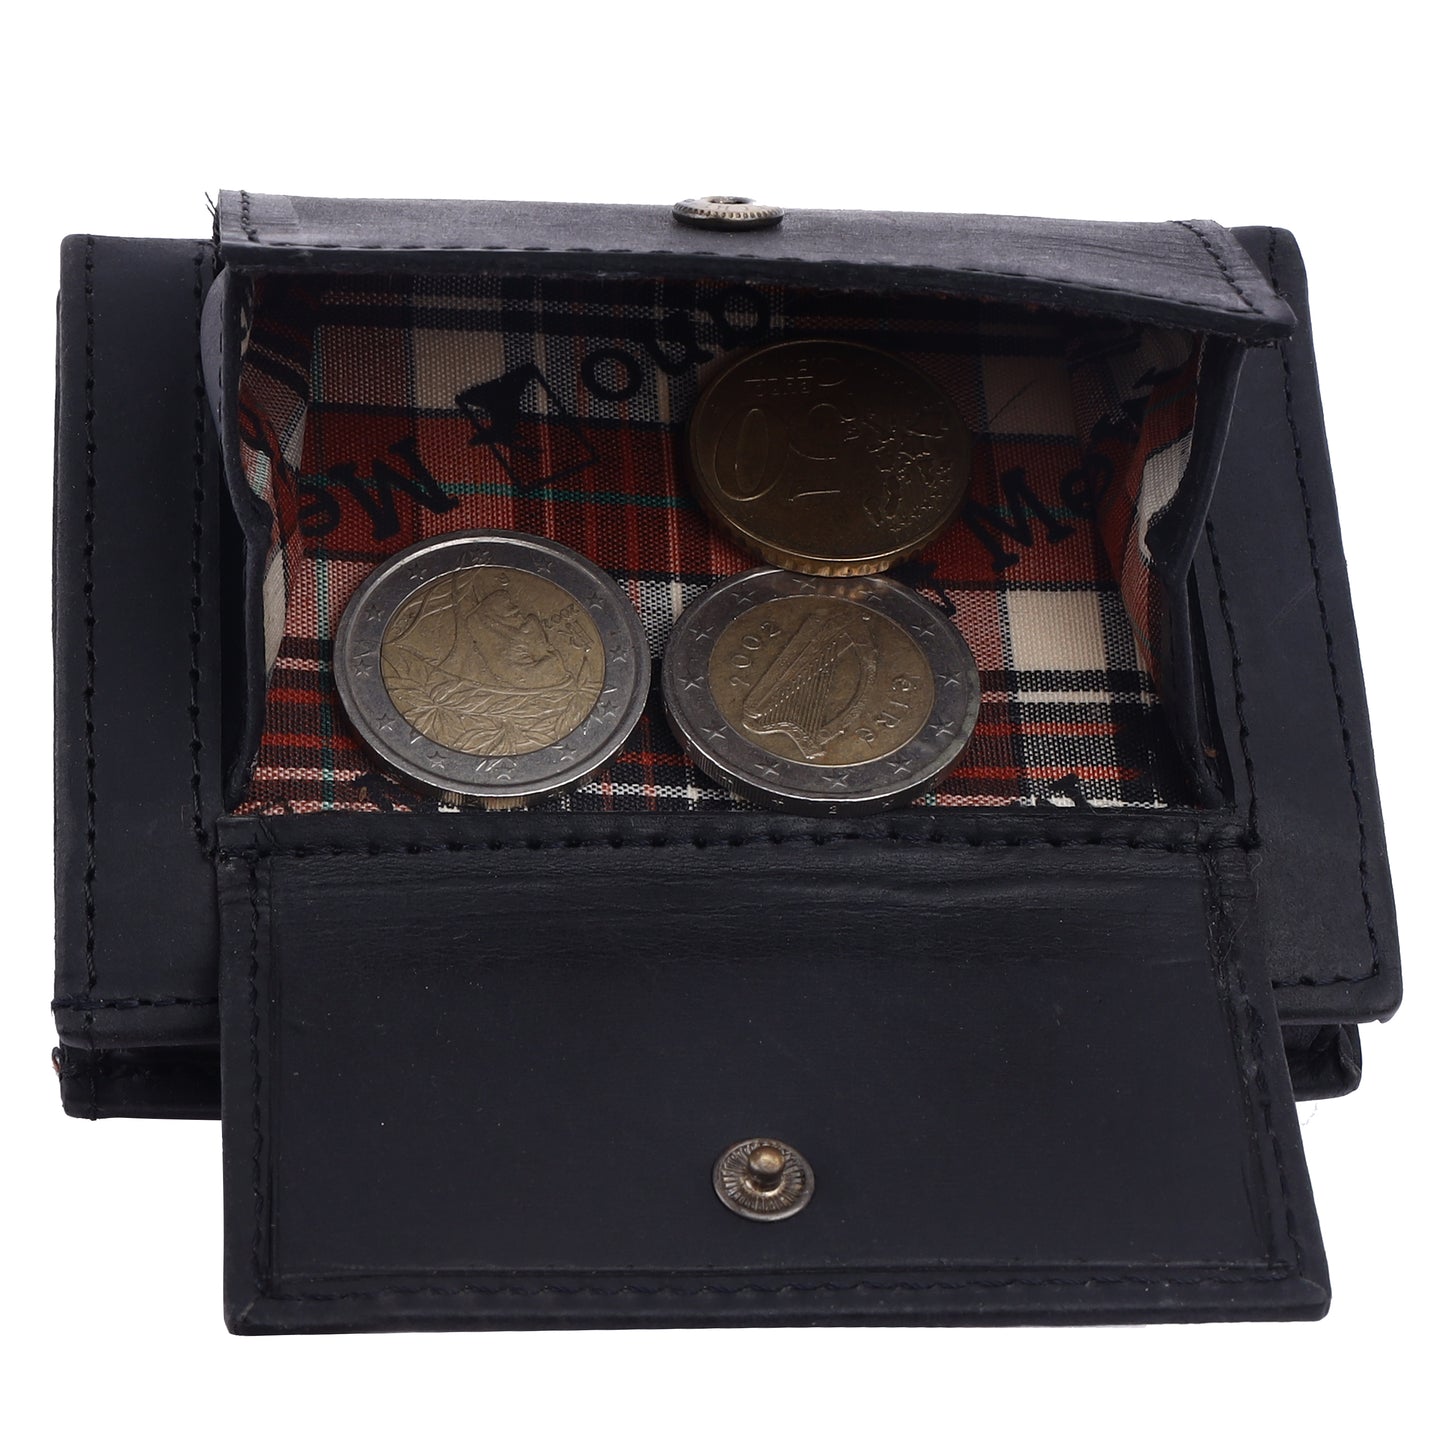 MERCANO® Schwarze Geldbörse für Damen und Herren aus Leder mit Flipcase | RFID-Schutz | 10 Kartenfächern | Scheinfach | Münzfach | #C01